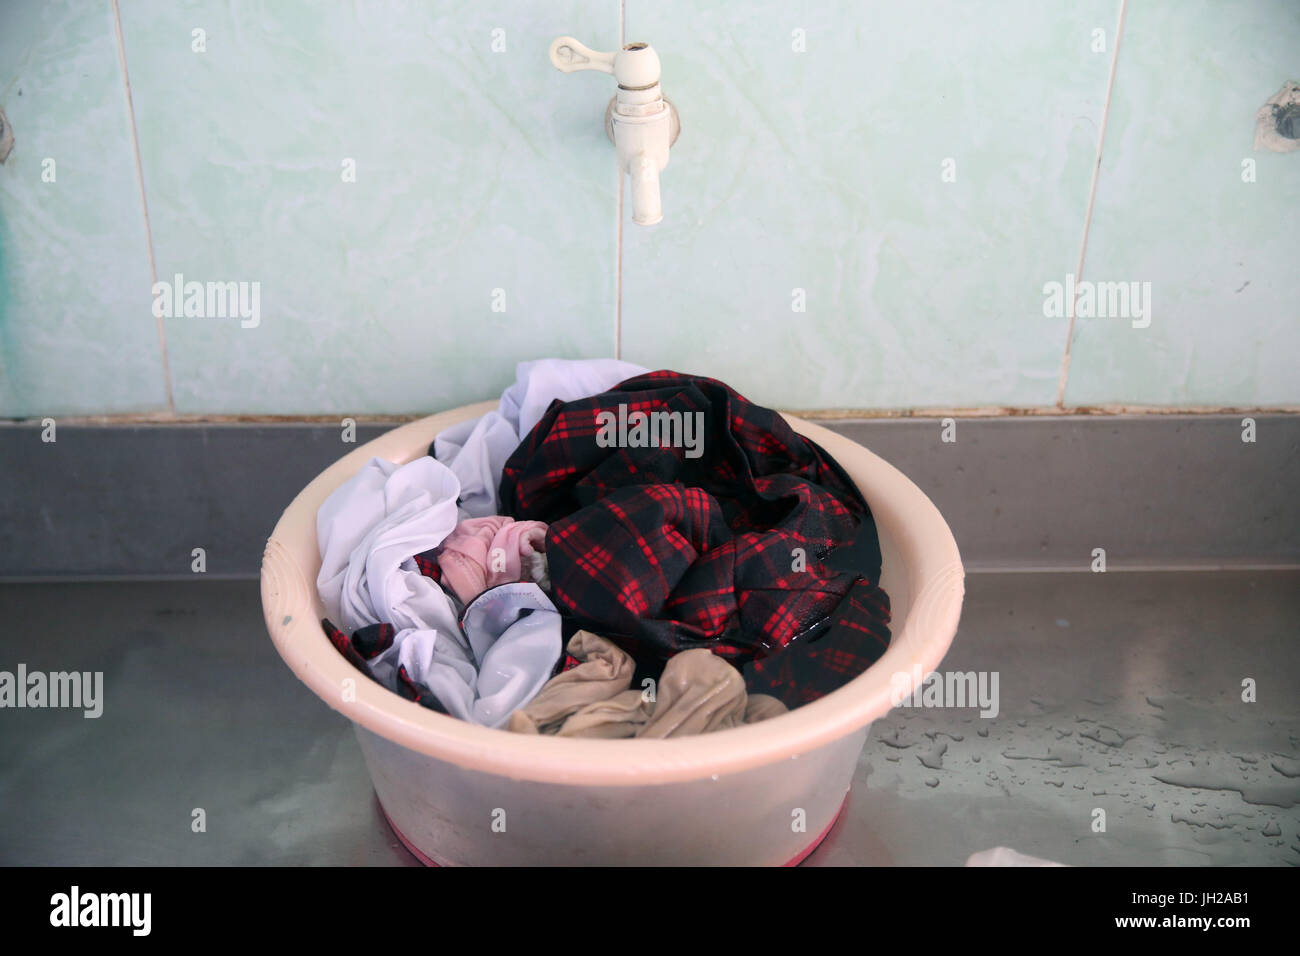 Lavabo lleno de ropa. Ho Chi Minh City. Vietnam. Foto de stock